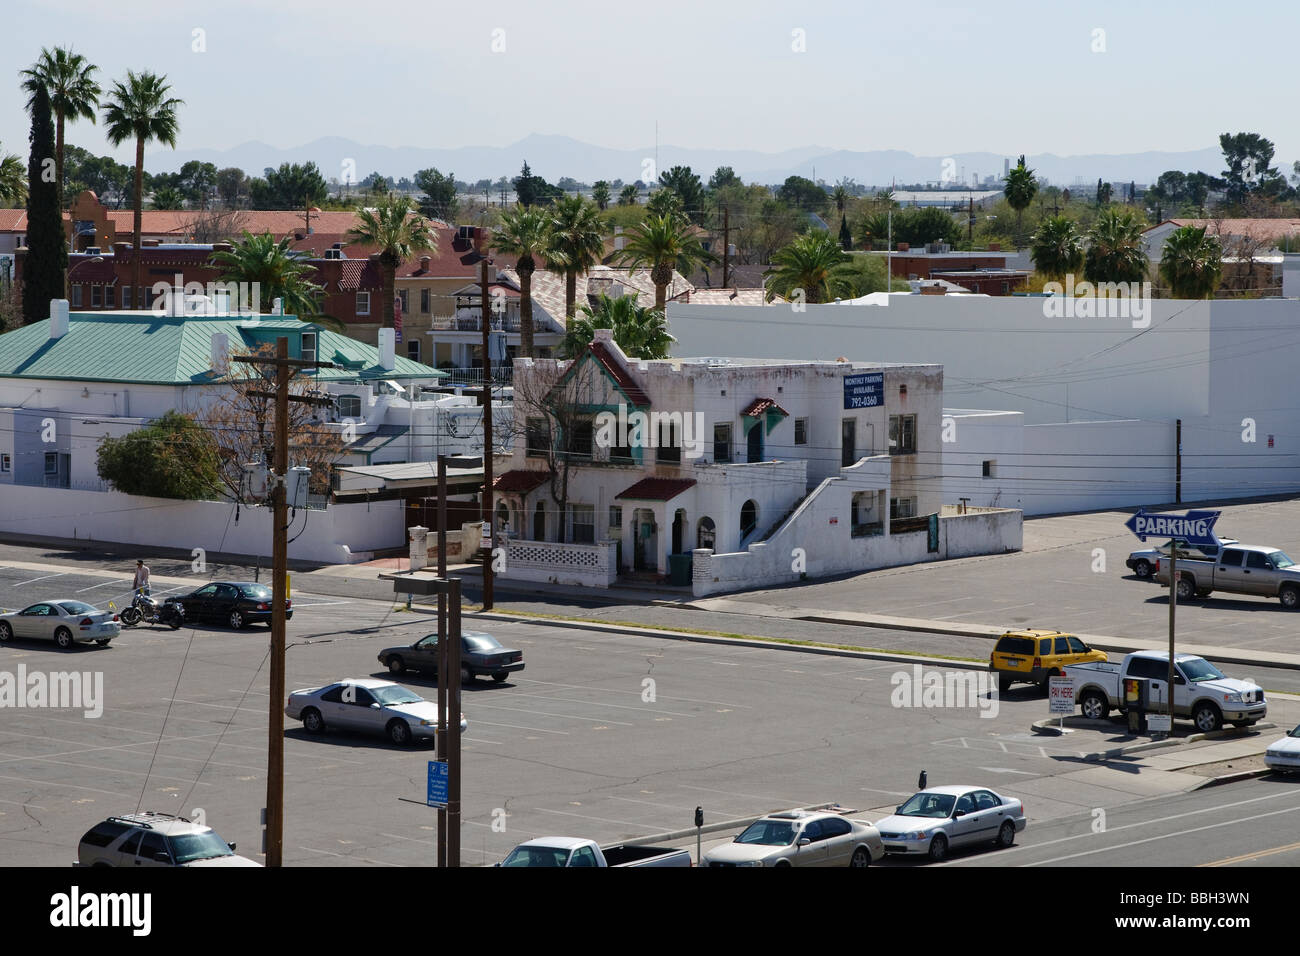 Vieux bâtiment pittoresque à côté de terrains de stationnement au centre-ville de Tucson Arizona Banque D'Images